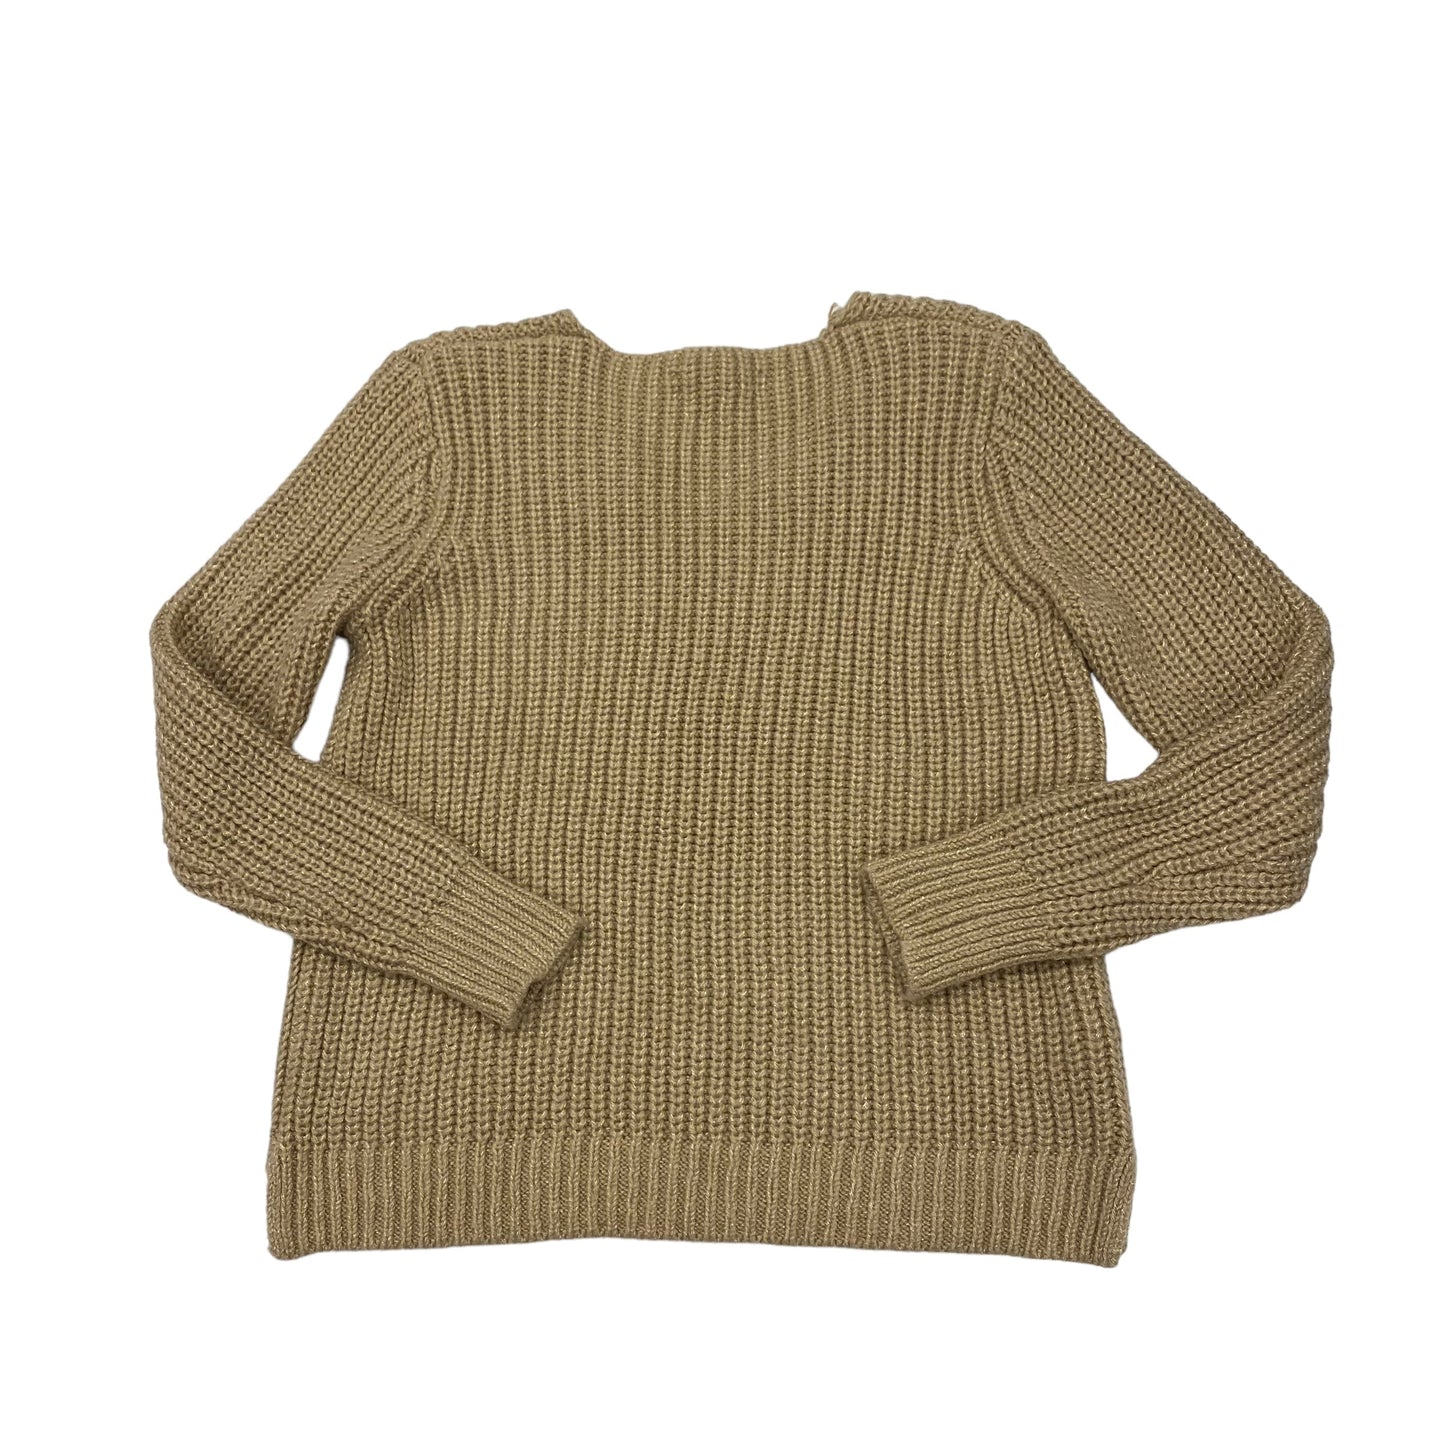 Sweater By Loft  Size: L